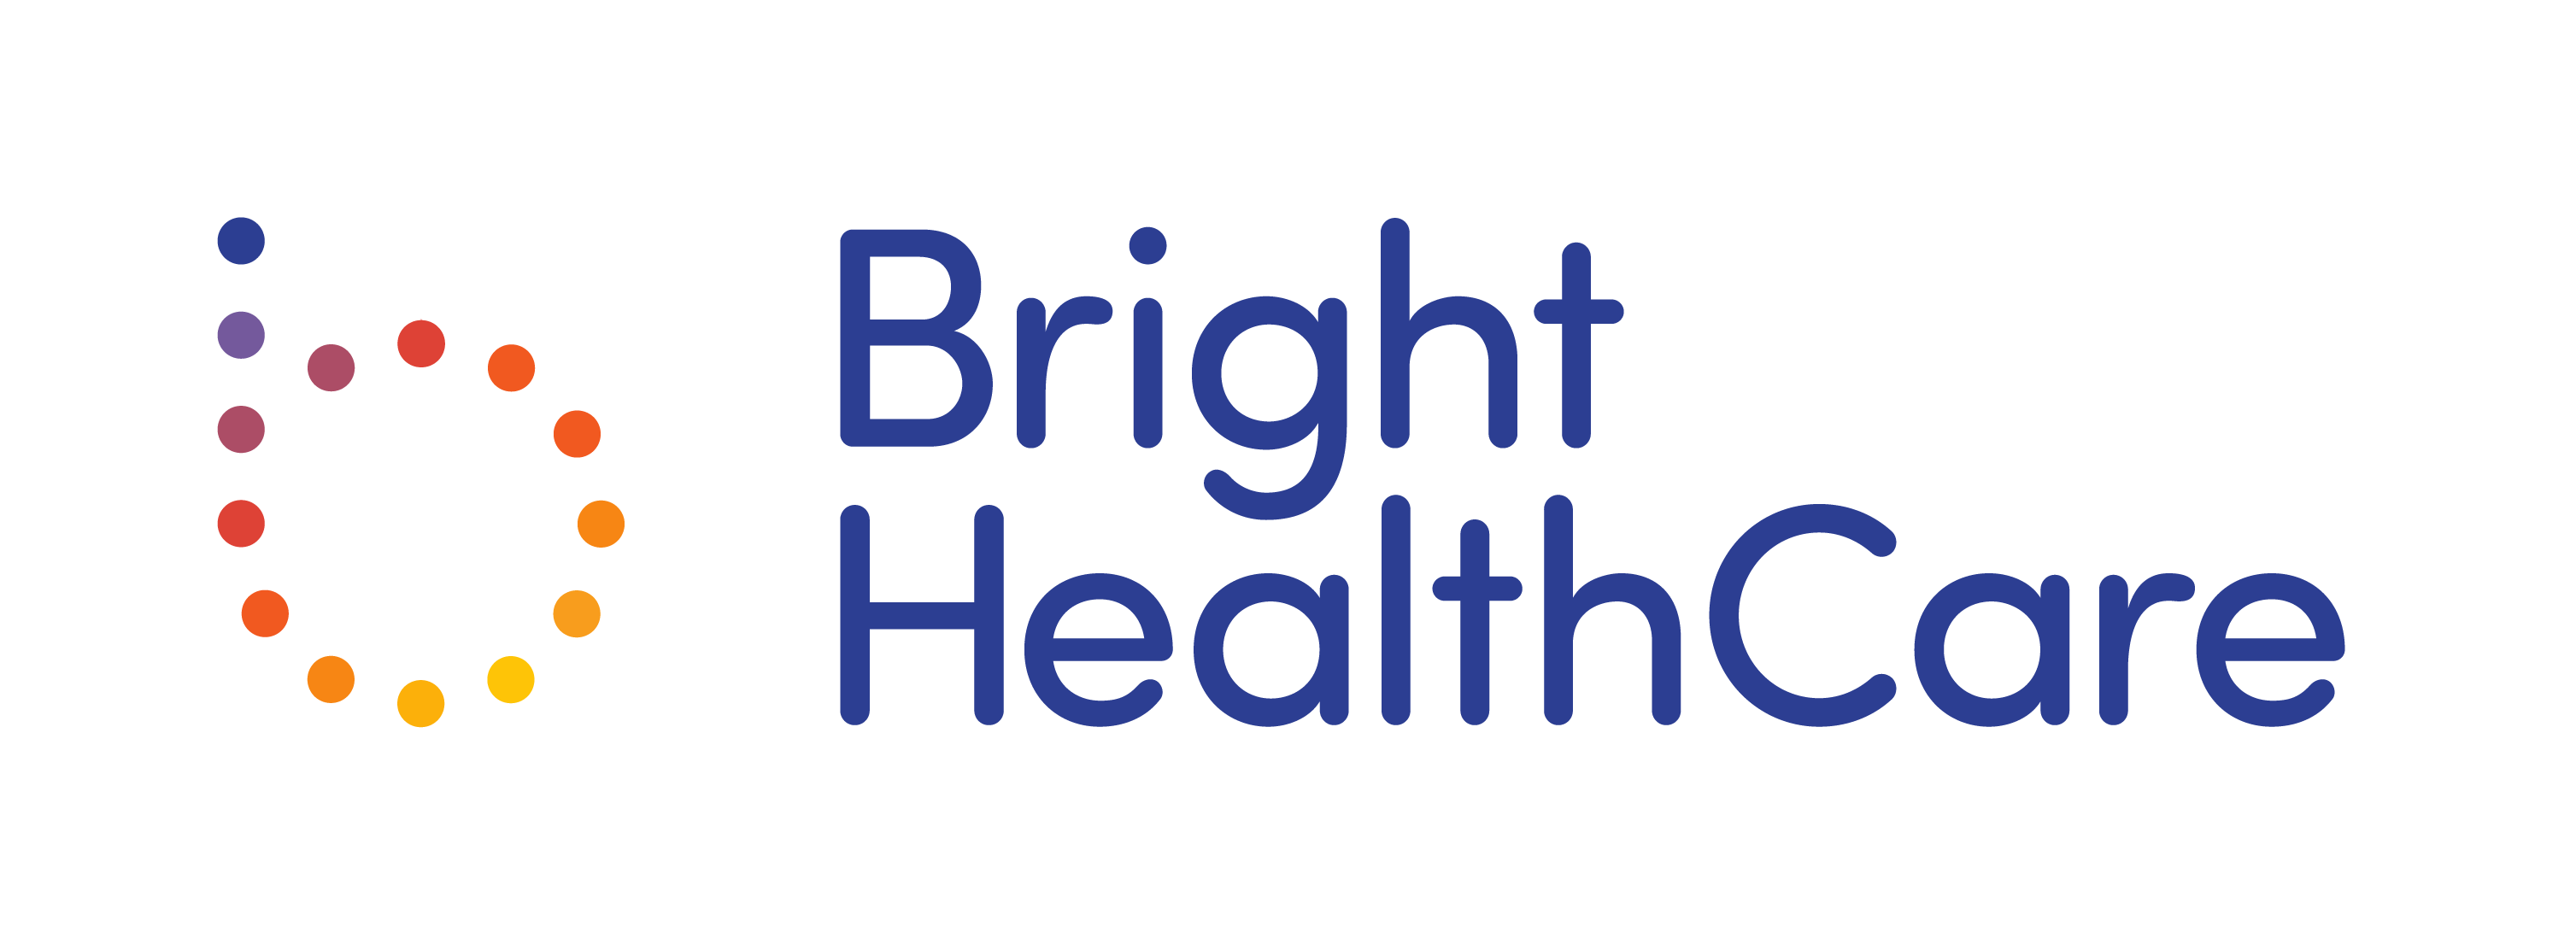 bright healthcare insurance